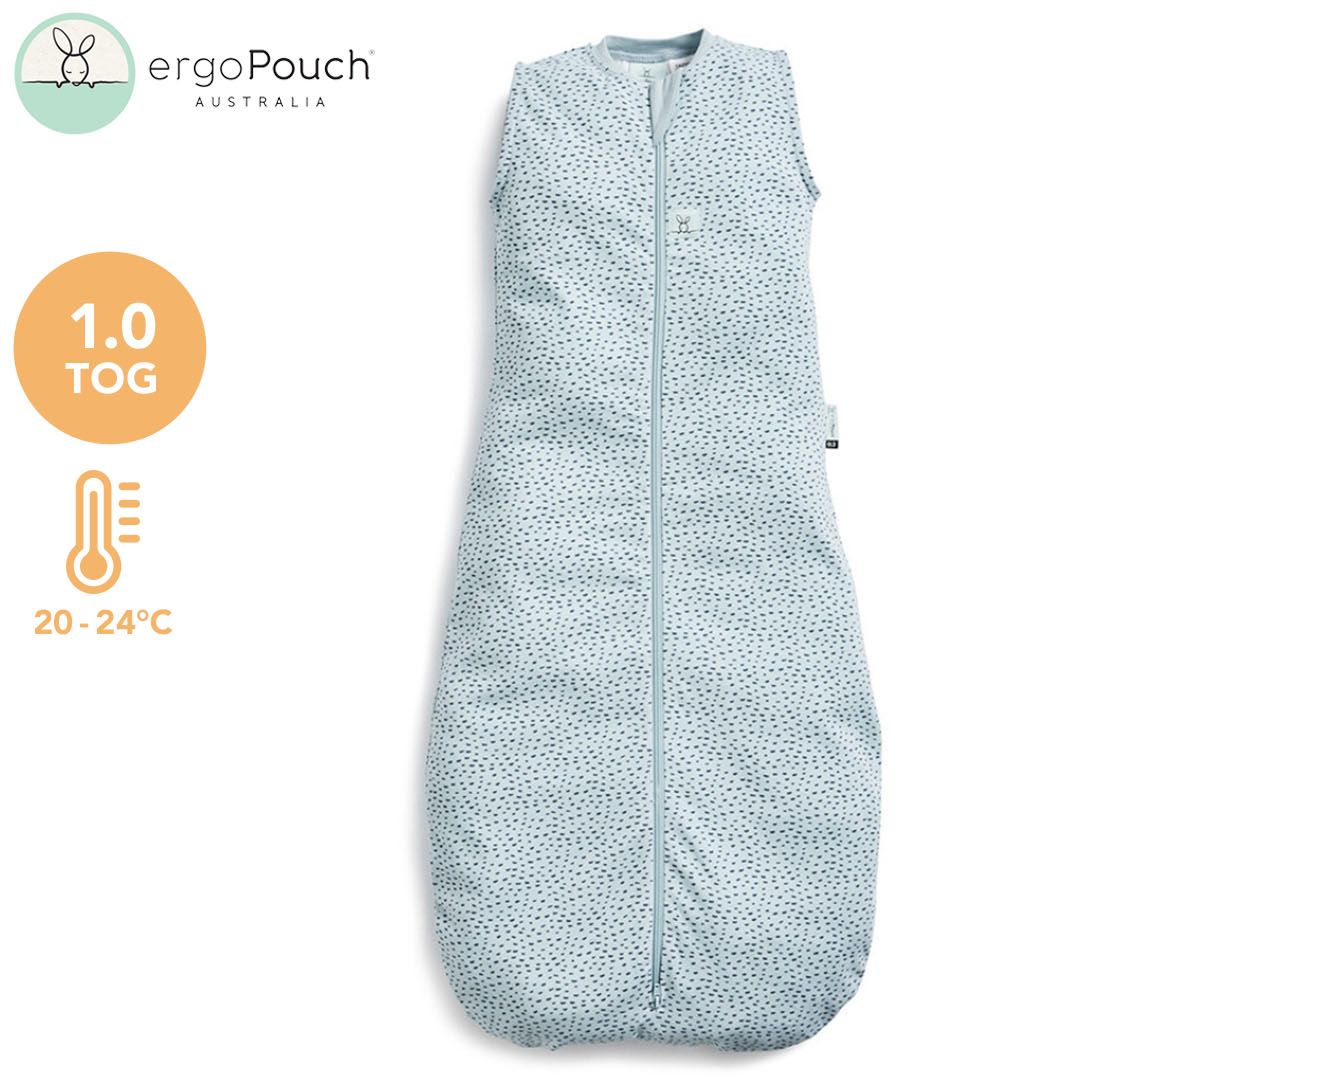 ergoPouch 1.0 Tog Jersey Sleeping Bag - Pebble | Catch.com.au